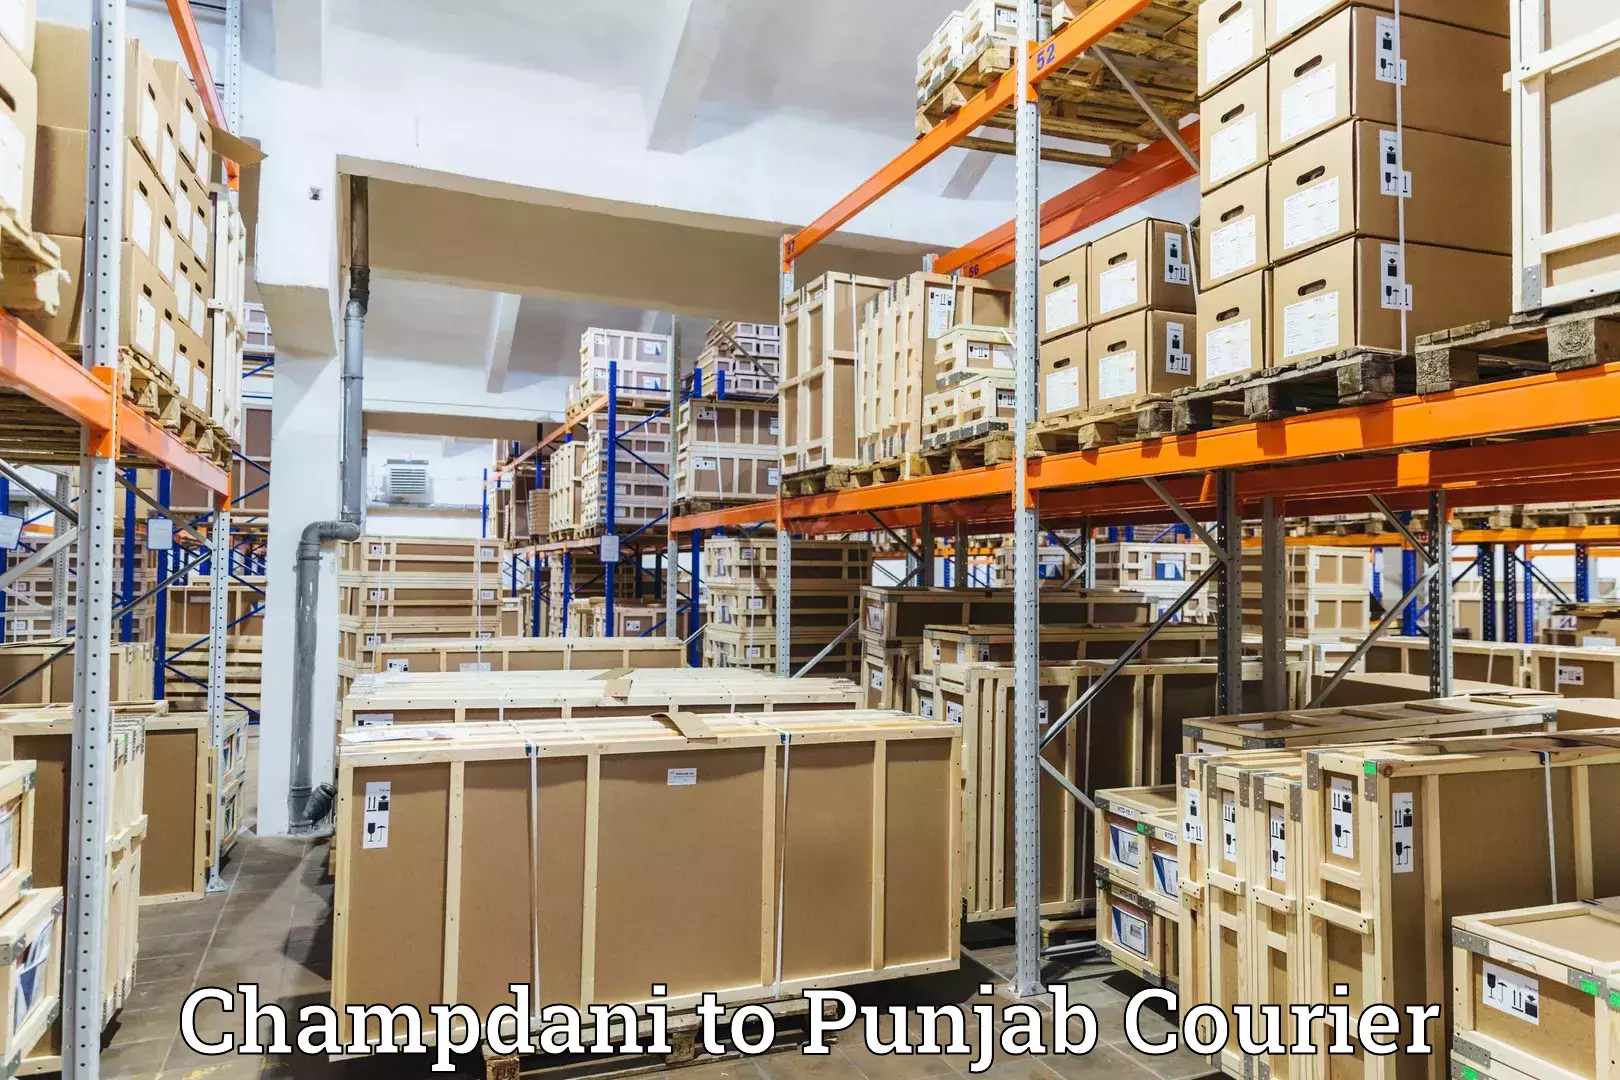 Courier services in Champdani to Rupnagar